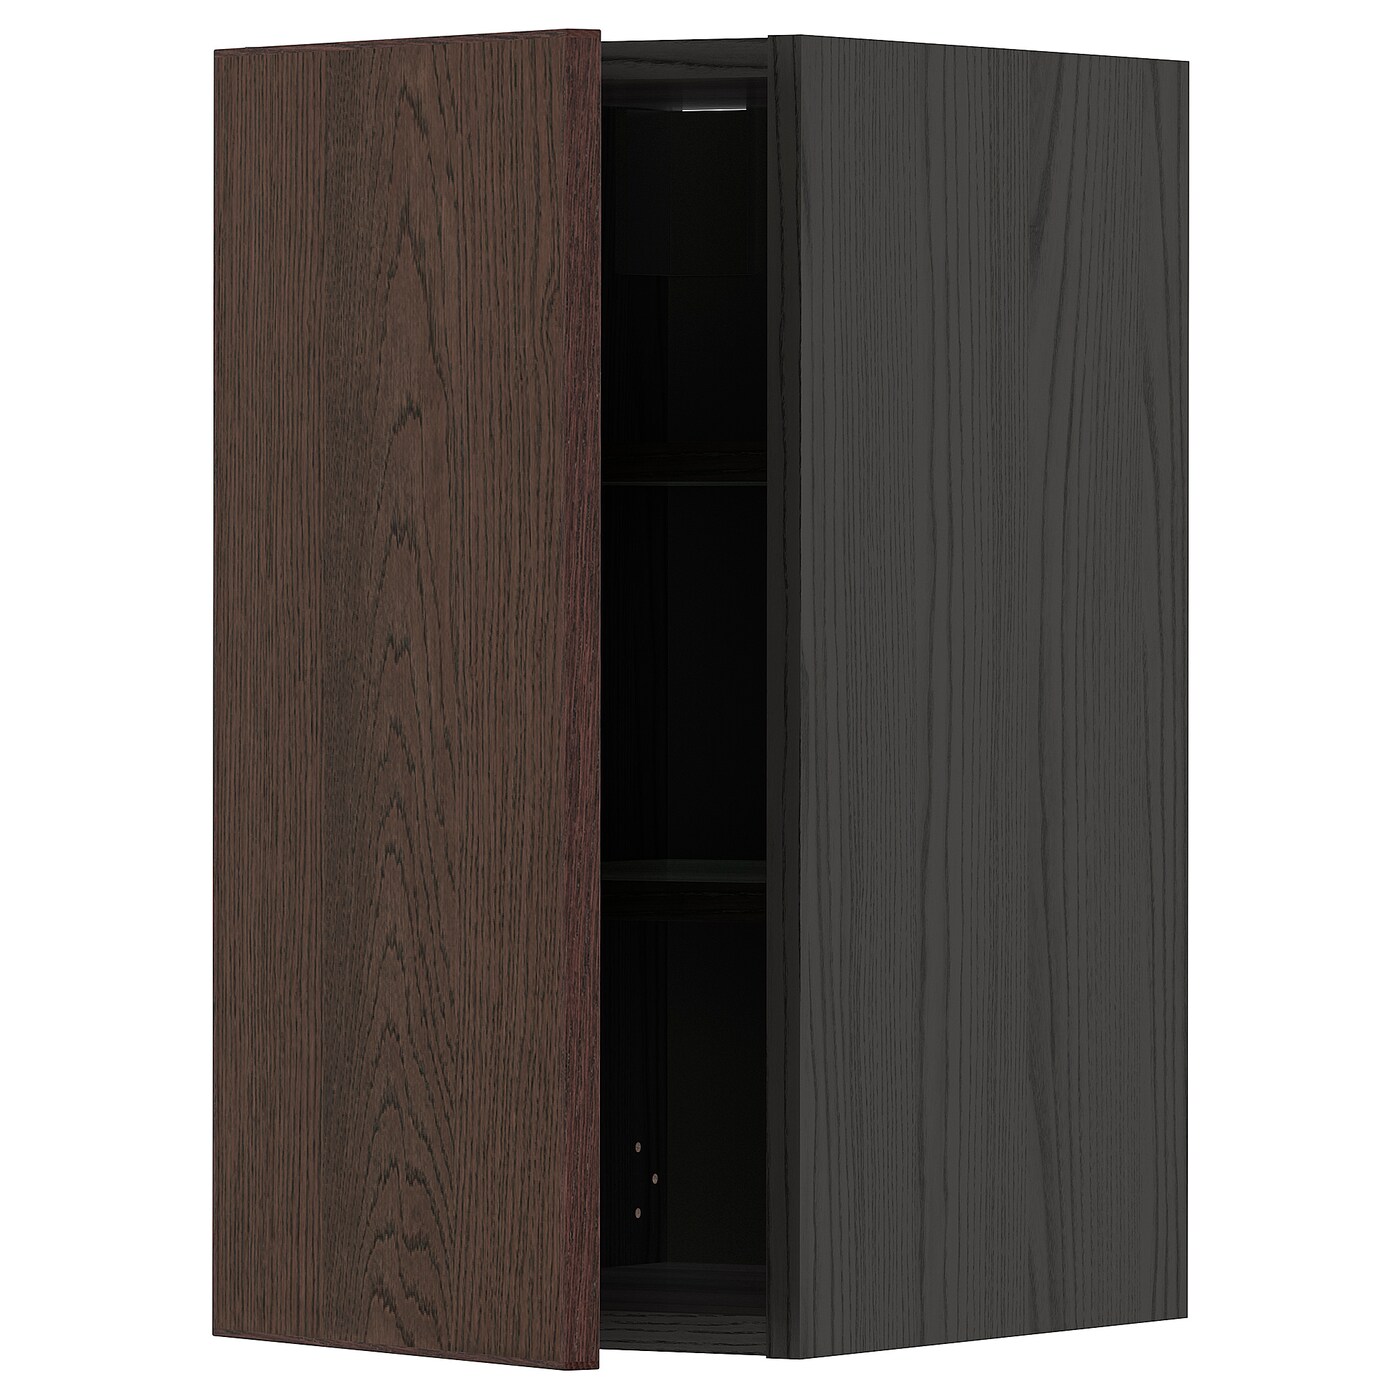 Навесной шкаф с полкой - METOD IKEA/ МЕТОД ИКЕА, 60х30 см, черный/коричневый